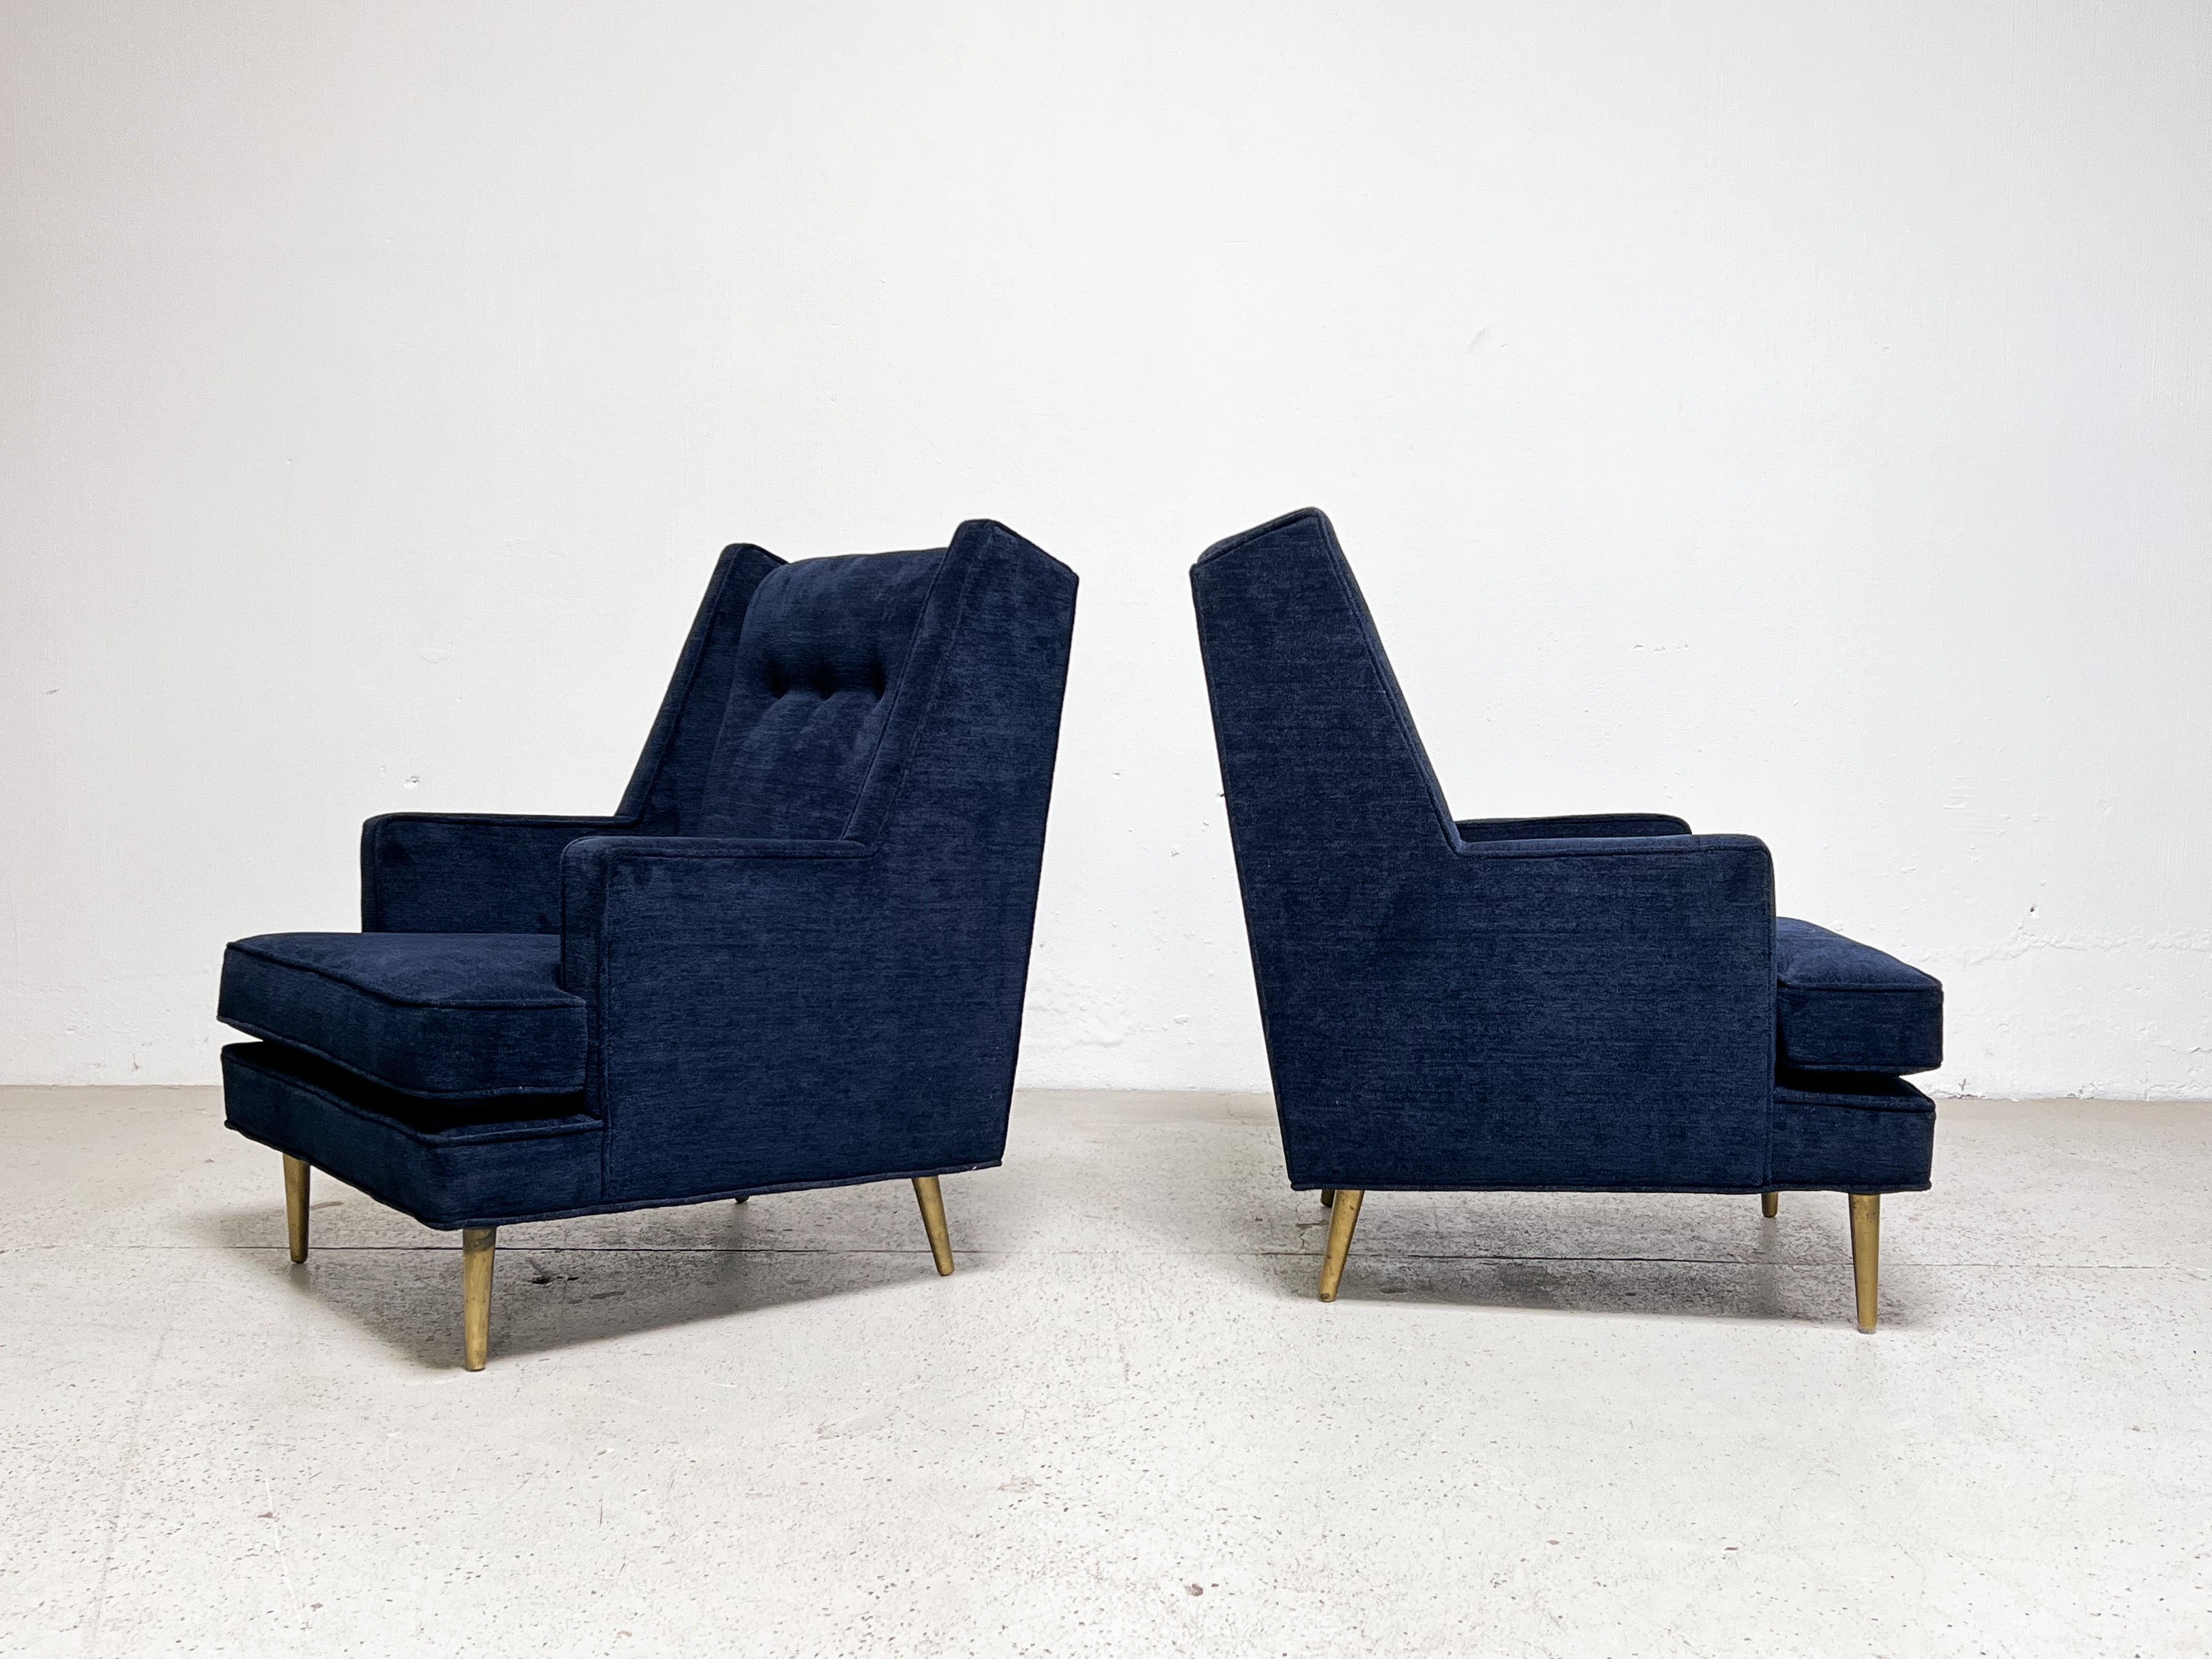 Ein klassisches Paar Dunbar Lounge-Sessel mit hoher Rückenlehne und Messingbeinen, entworfen von Edward Wormley. Vollständig restauriert und mit einem tiefblauen Chenille-Stoff bezogen.